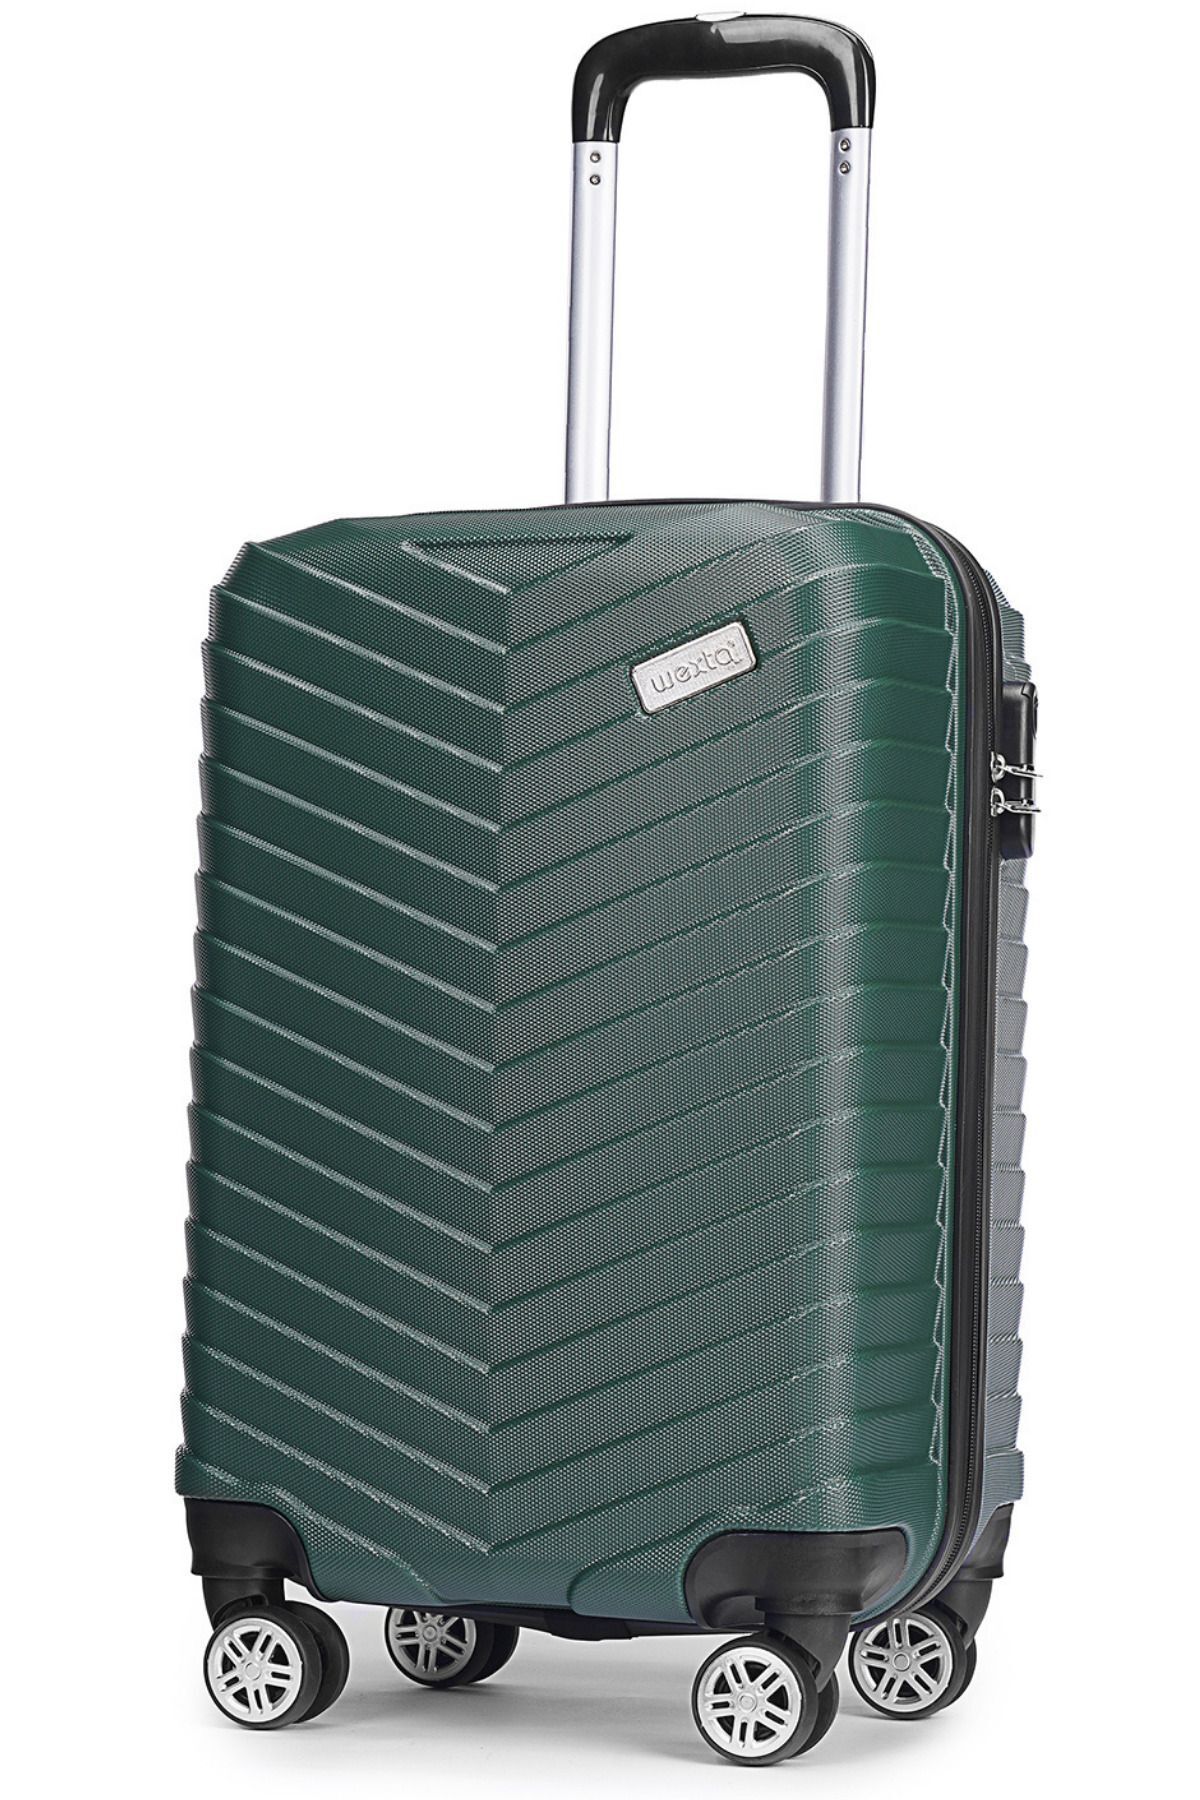 Wexta Wx-1001 Yağ Yeşili Kabin Boy Valiz/ Seyahat Bavulu